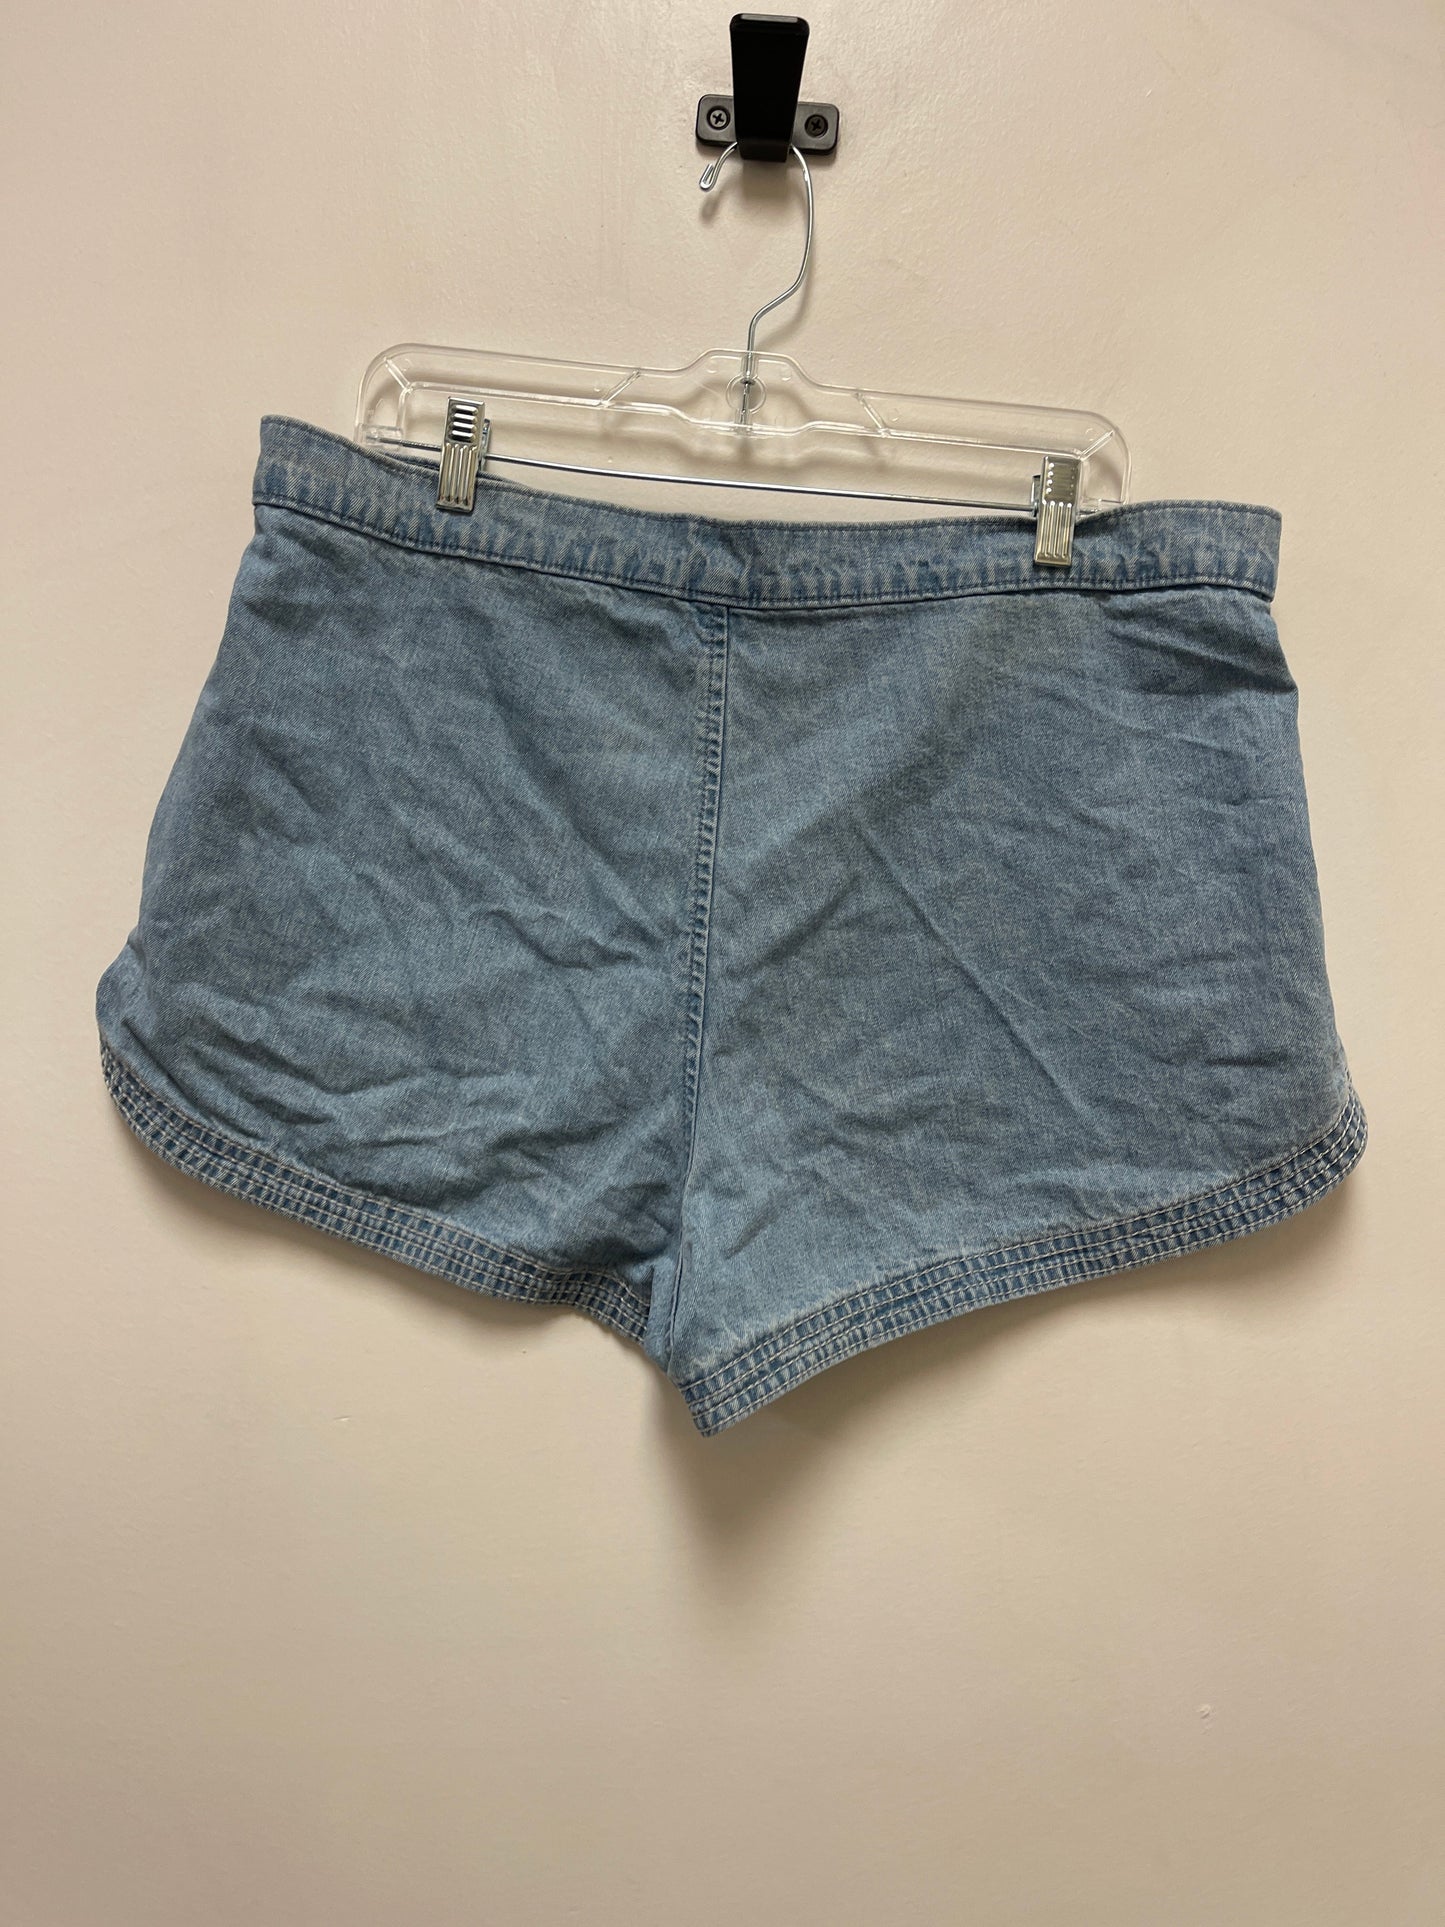 Blue Denim Shorts Gap, Size 16